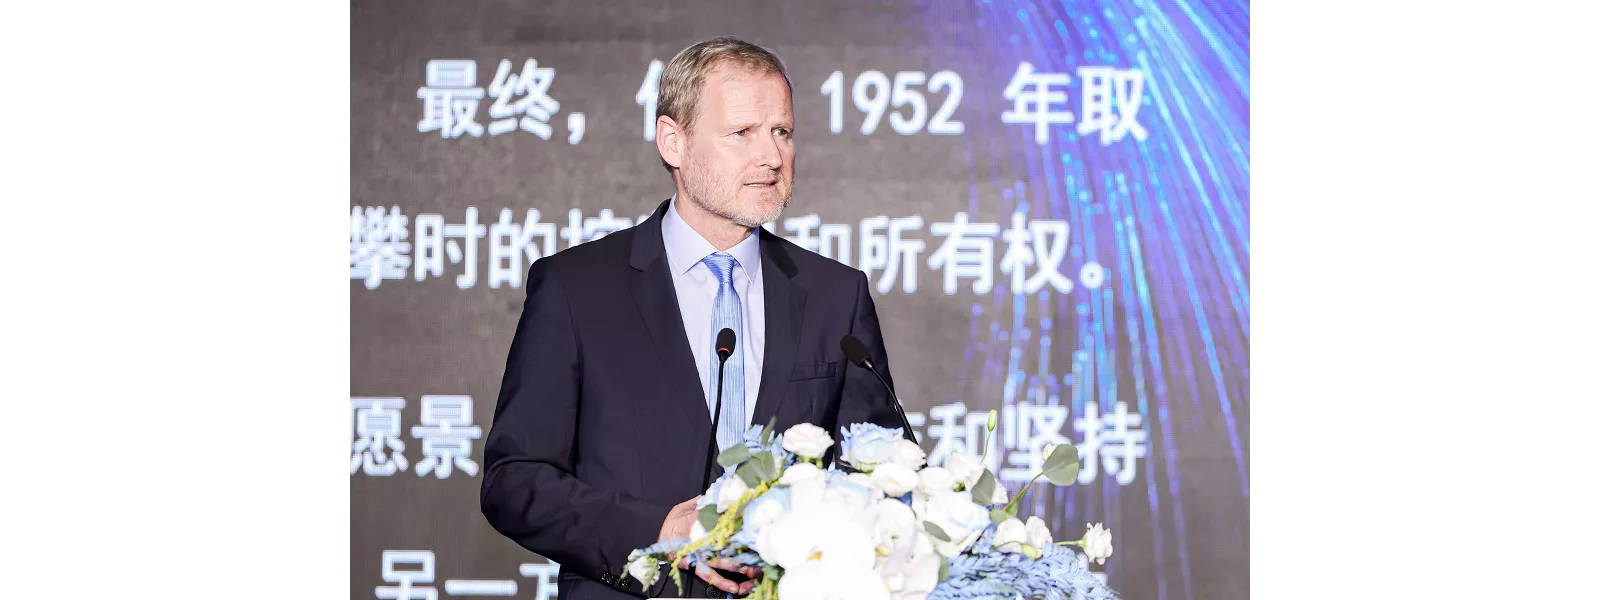 Andreas Feichtinger hablando sobre el décimo aniversario de Plansee China